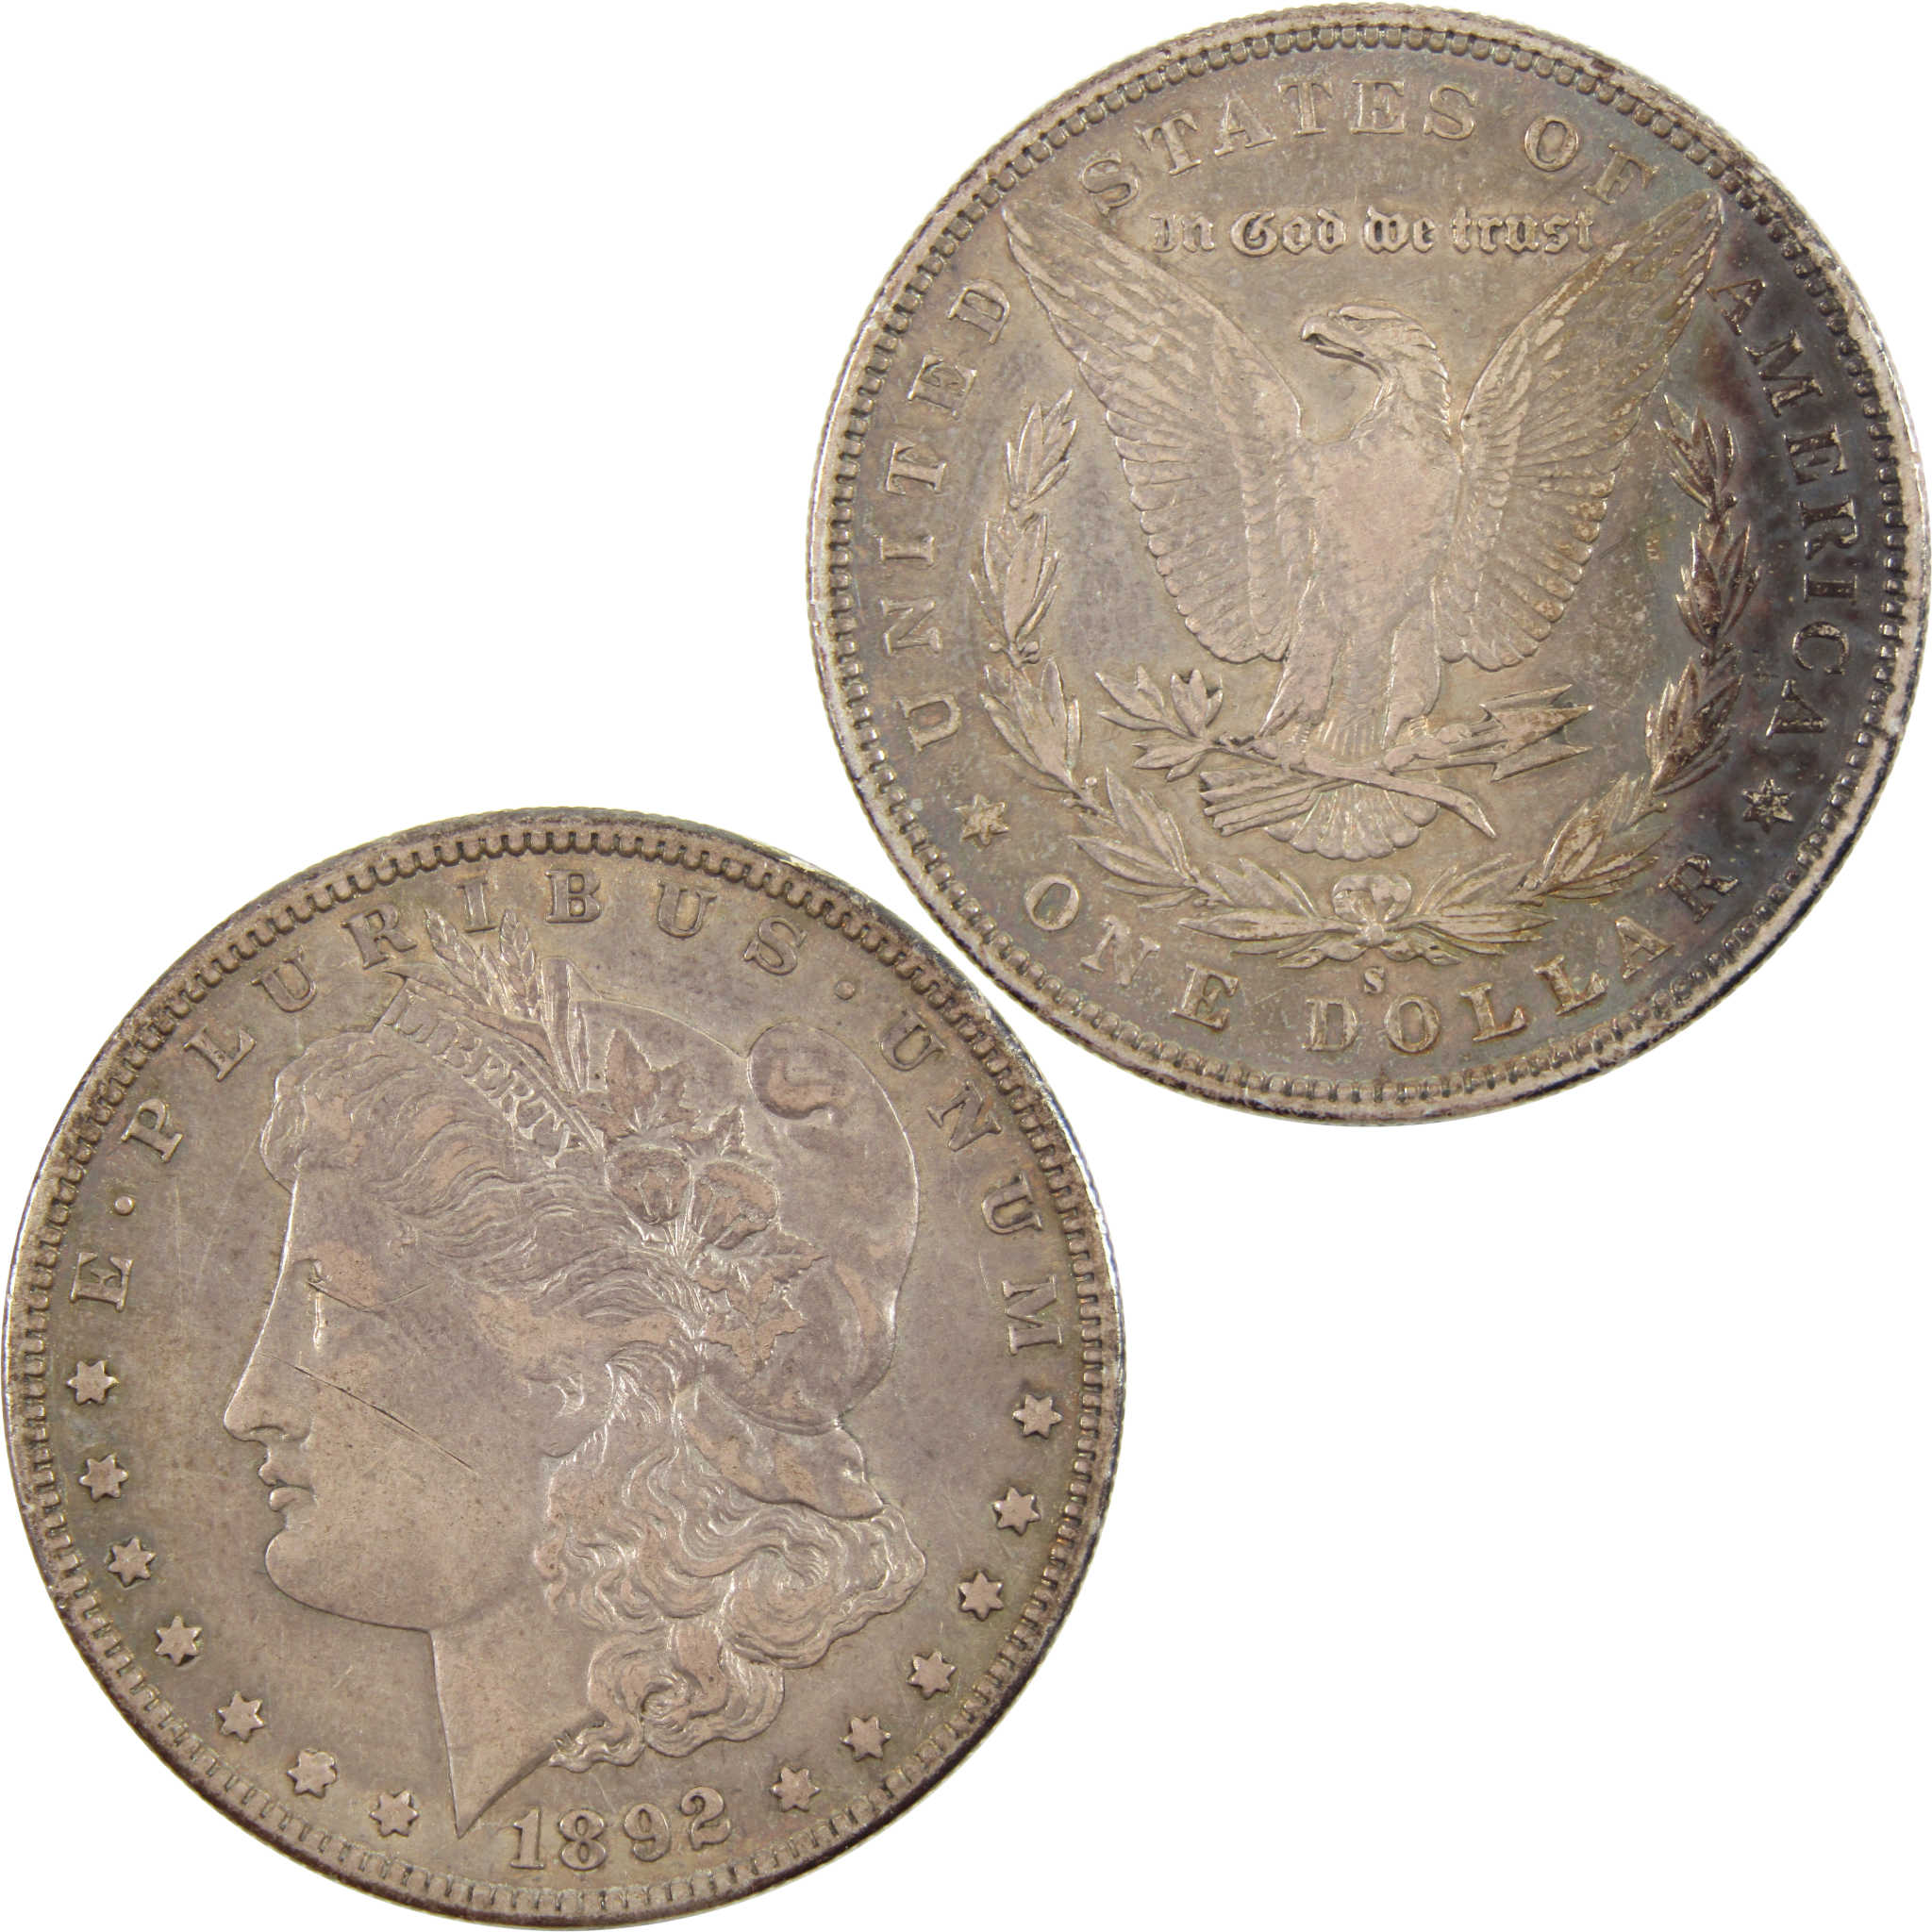 1892 S Morgan Dollar XF EF 90% Silver $1 Coin SKU:I11176 - Morgan coin - Morgan silver dollar - Morgan silver dollar for sale - Profile Coins &amp; Collectibles